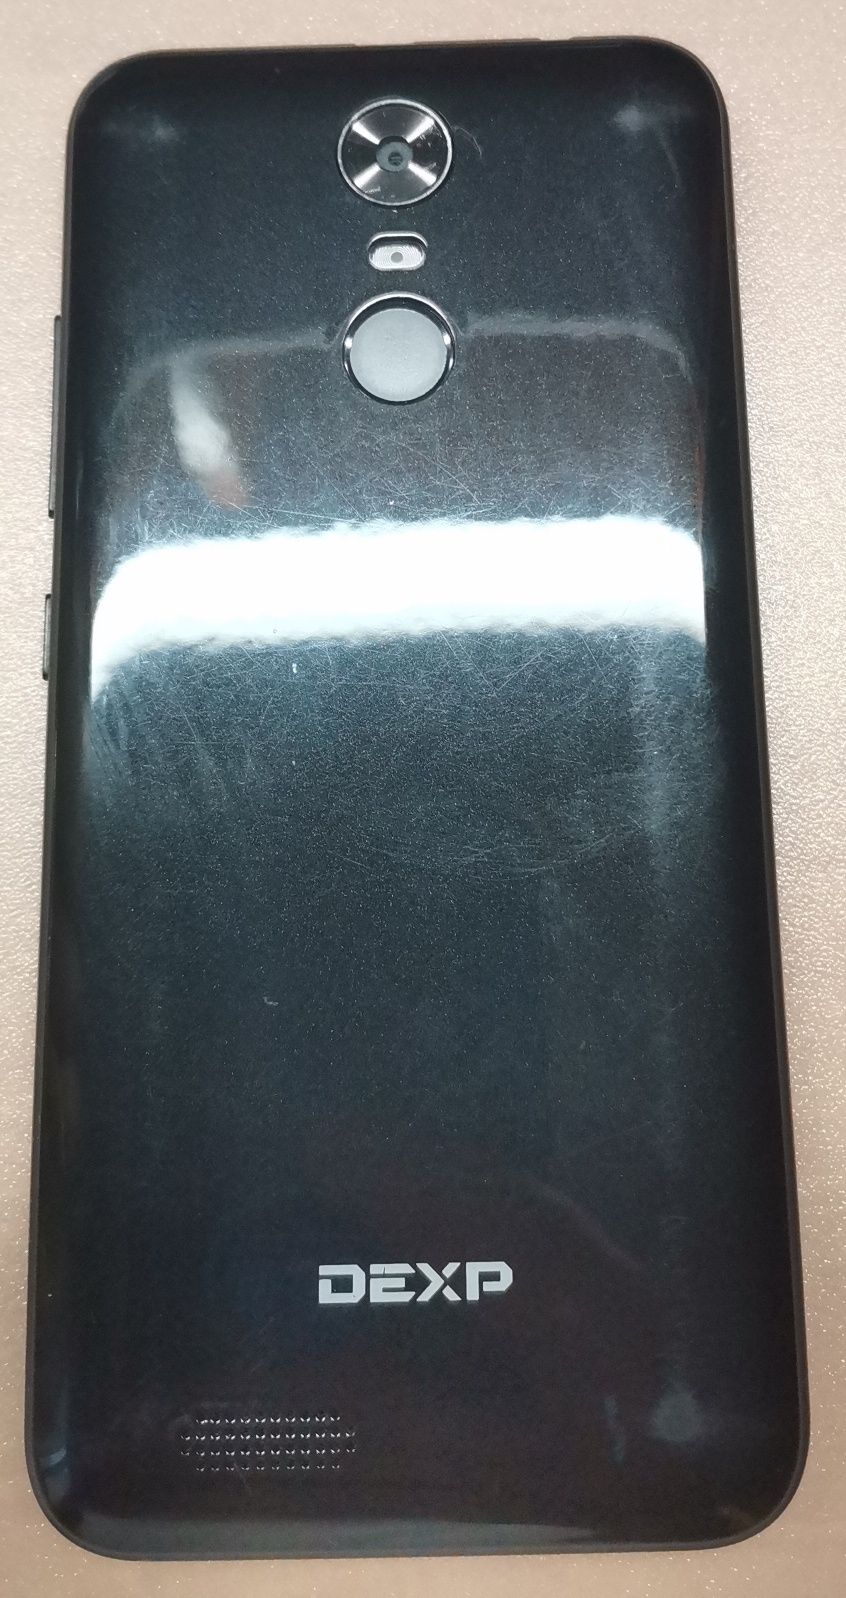 Смартфон DEXP Ixion G155 под ремонт или на запчасти